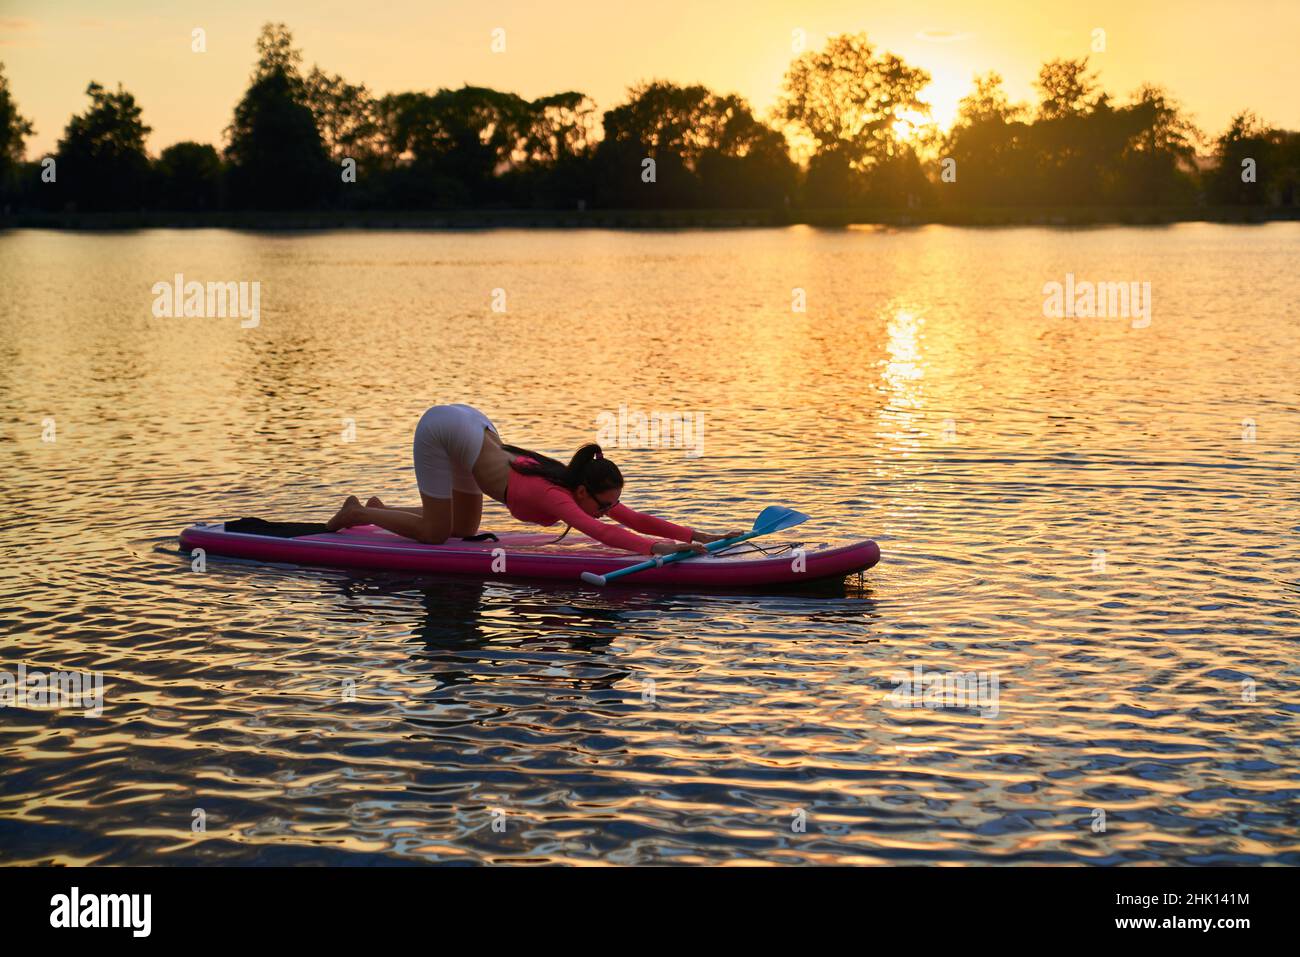 Schlanke junge Frau in activewear Stretching Körper auf supboard während schönen Sommer Sonnenuntergang. Konzept von Menschen, Ausgleich und Wasseraktivität. Stockfoto